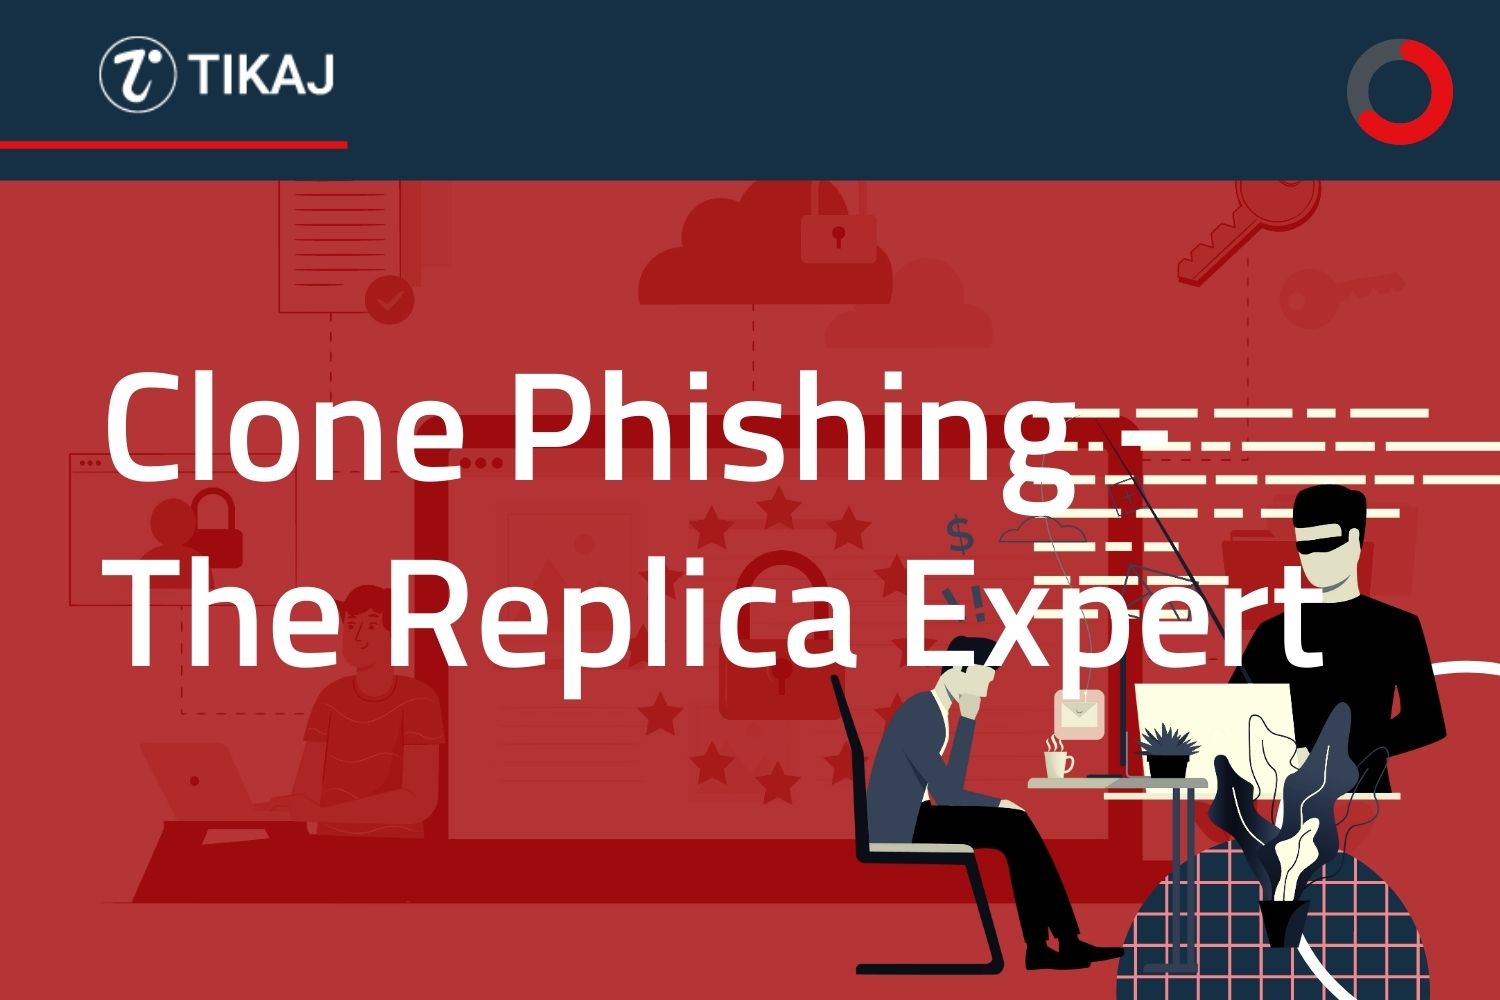 Clone Phishing - The Replica Expert